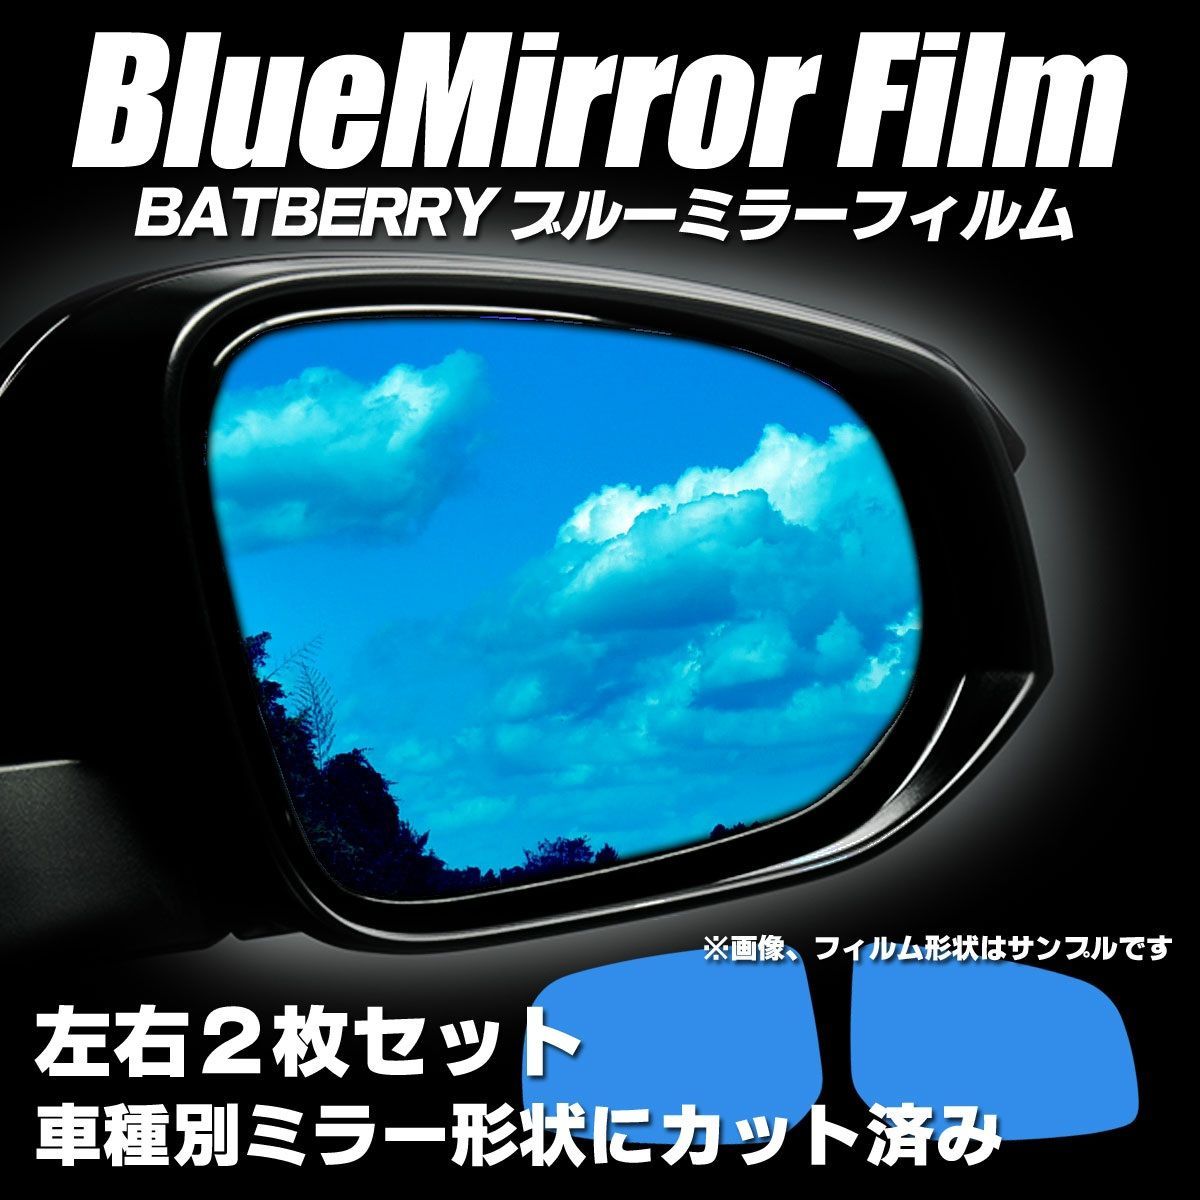 BATBERRY ブルーミラーフィルム トヨタ ピクシスバン S321M/S331M 電動ミラー専用 左右セット メルカリShops